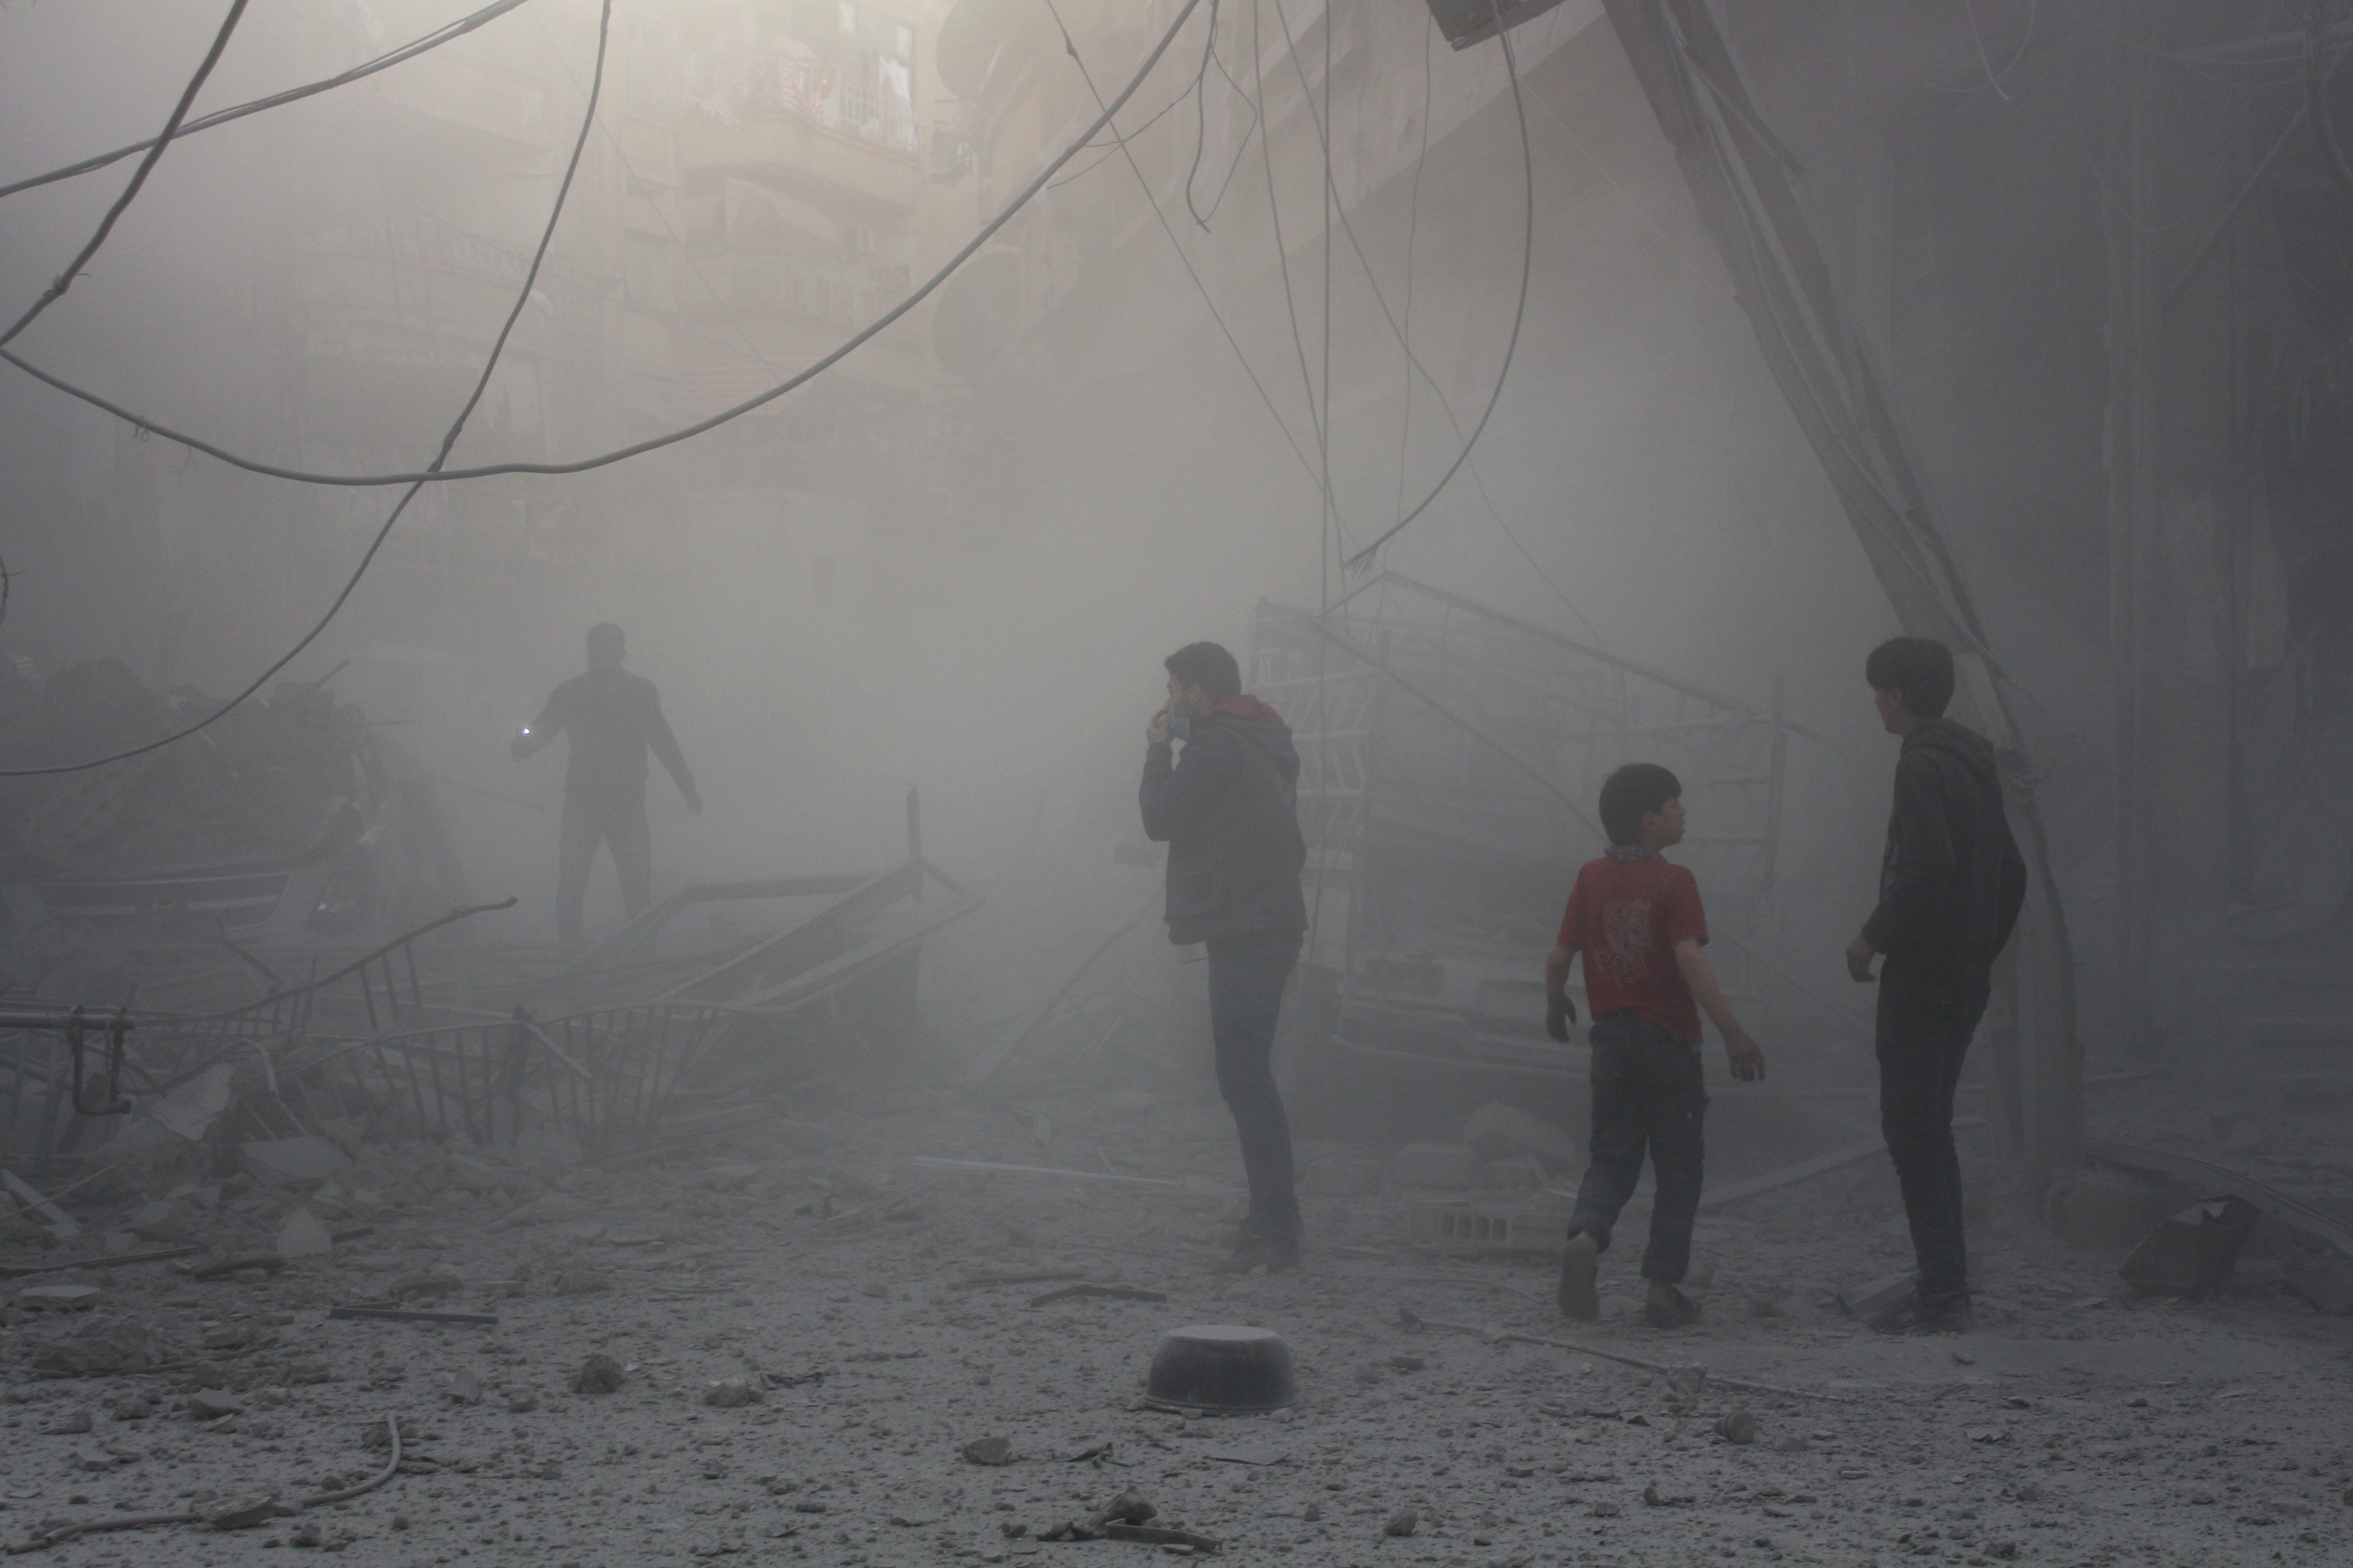 Nyugati hatalmak arra kérik a szír kormányt, hogy ne gyilkolja vegyifegyverekkel az ellenzéket